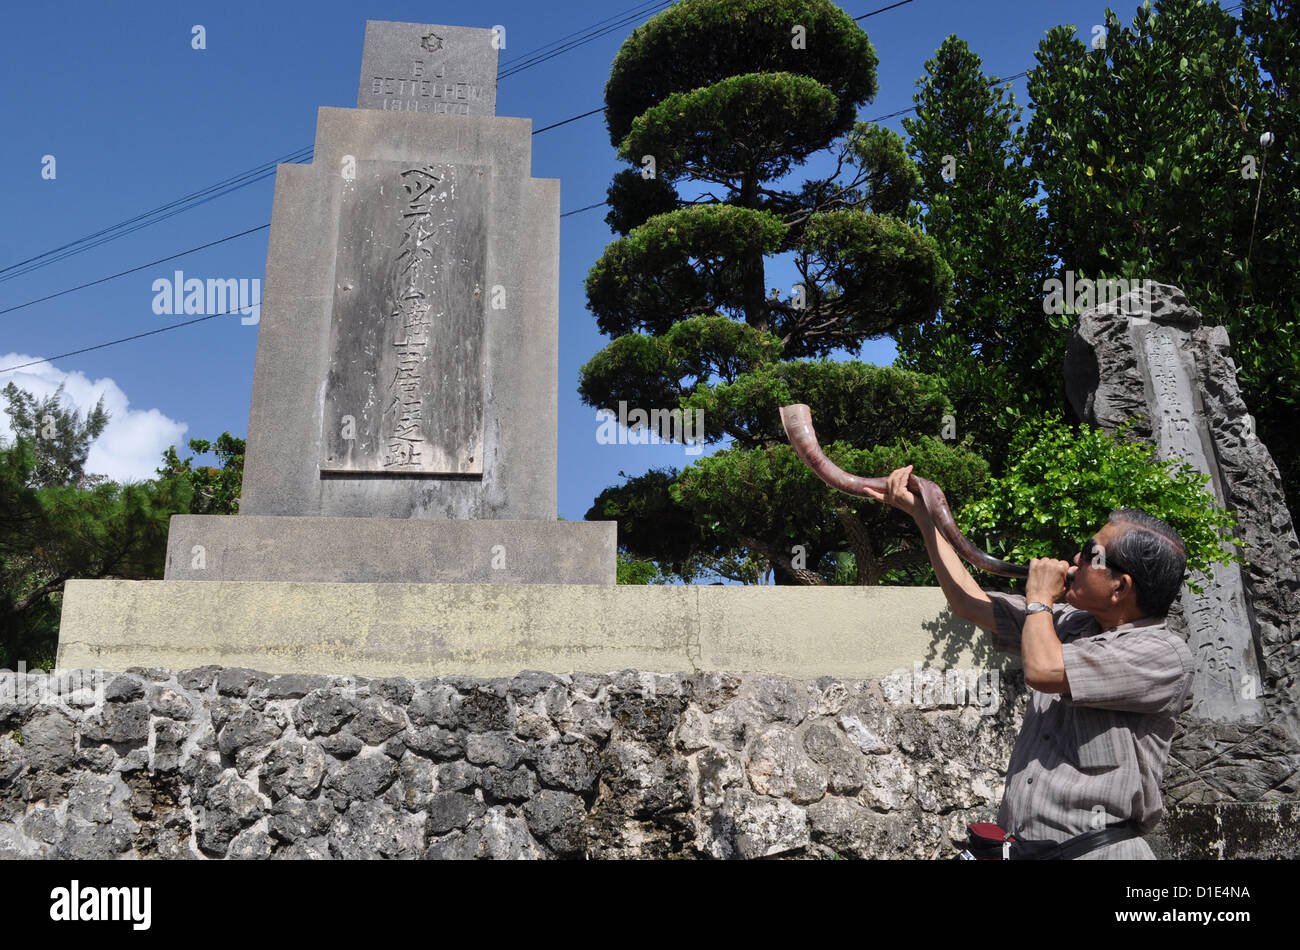 (Naha Okinawa, Giappone), un uomo cristiano soffia un avvisatore acustico per onorare il missionario che ha portato il cristianesimo a Okinawa, dalla sua tomba Foto Stock